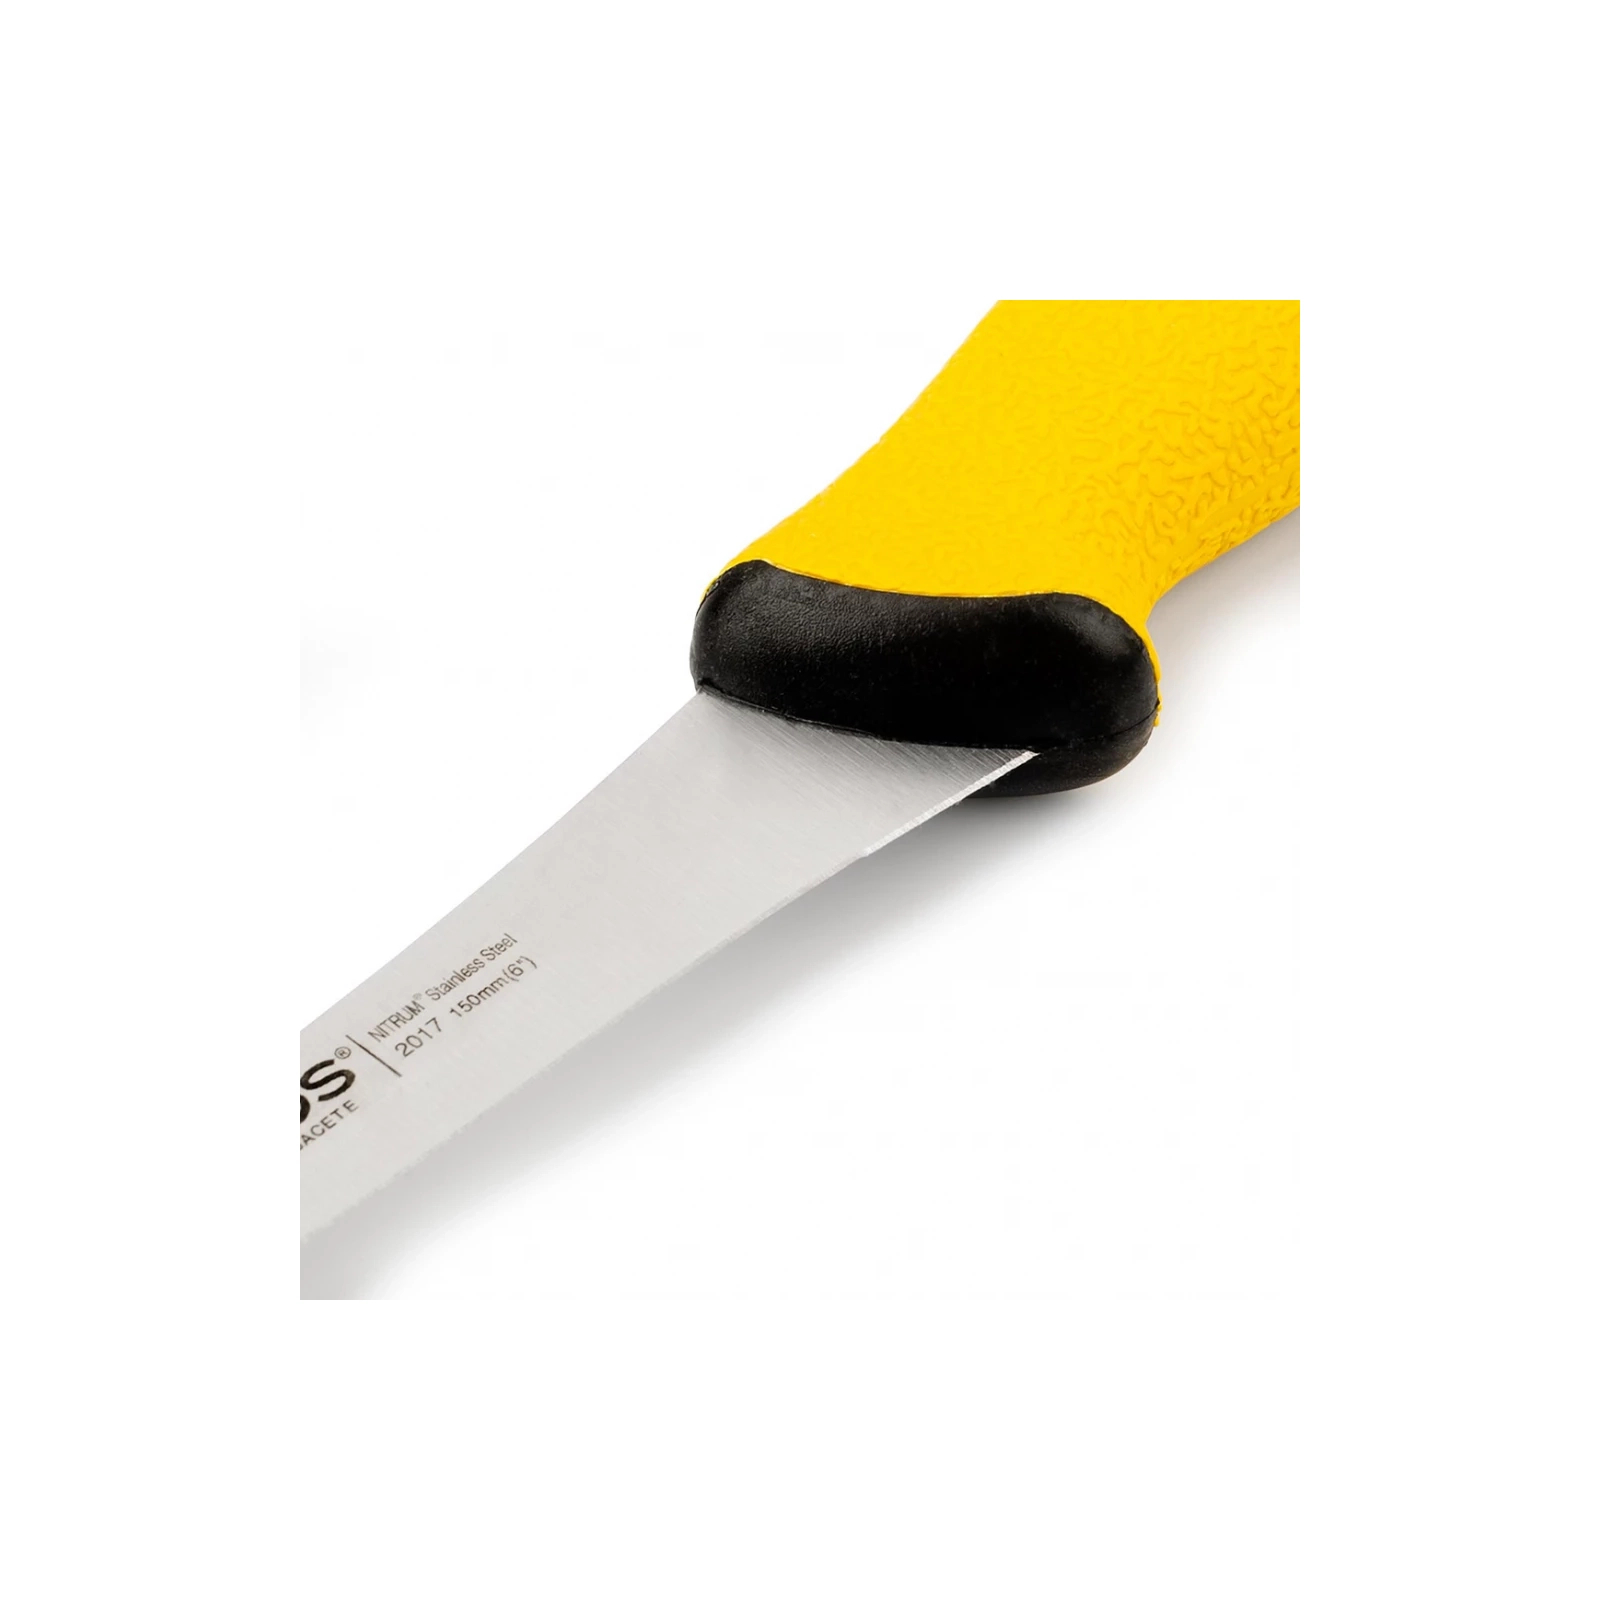 Кухонный нож Arcos Duo Pro обвалювальний 150 мм зі скошеним лезом (201700) изображение 2